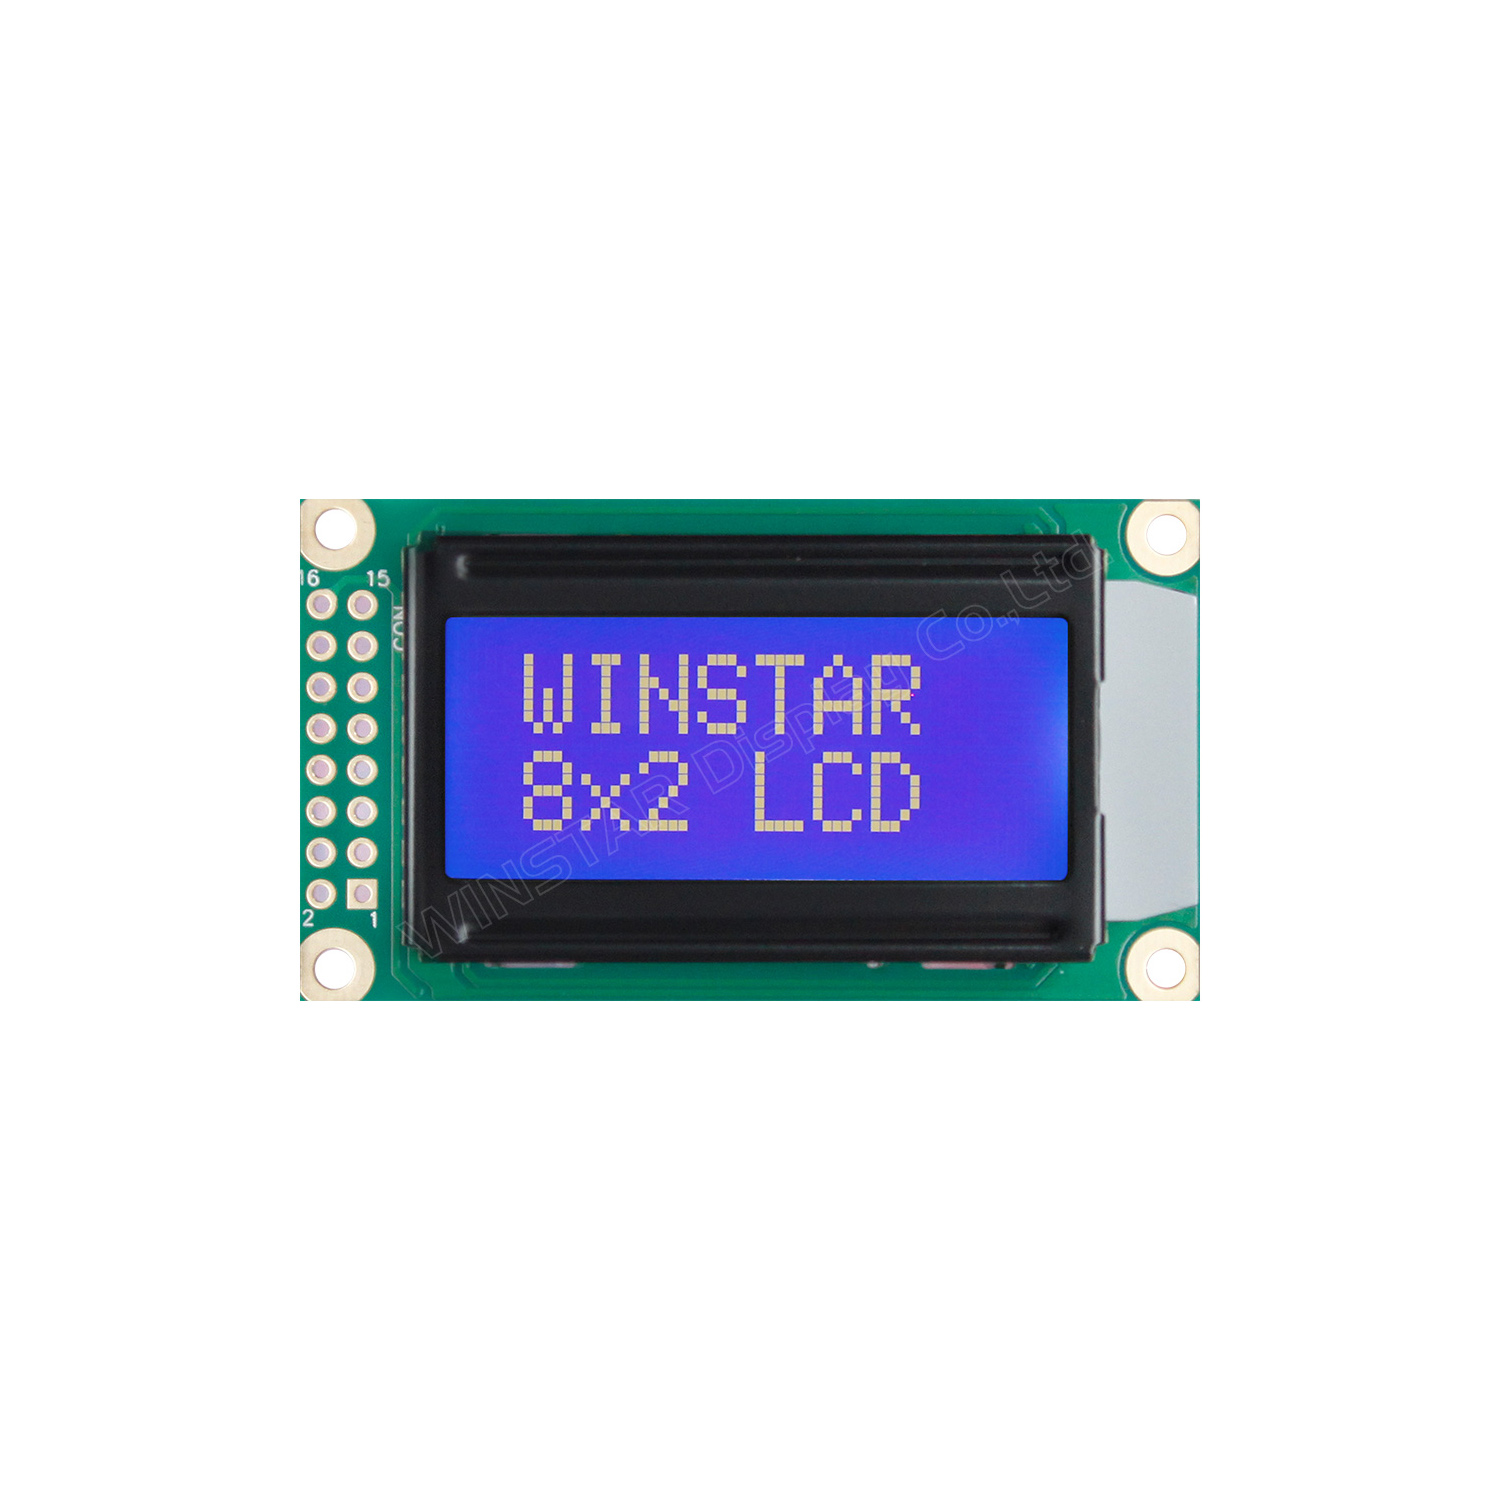 WINSTAR WH0802A символьный дисплей 58x32 (синий), фото